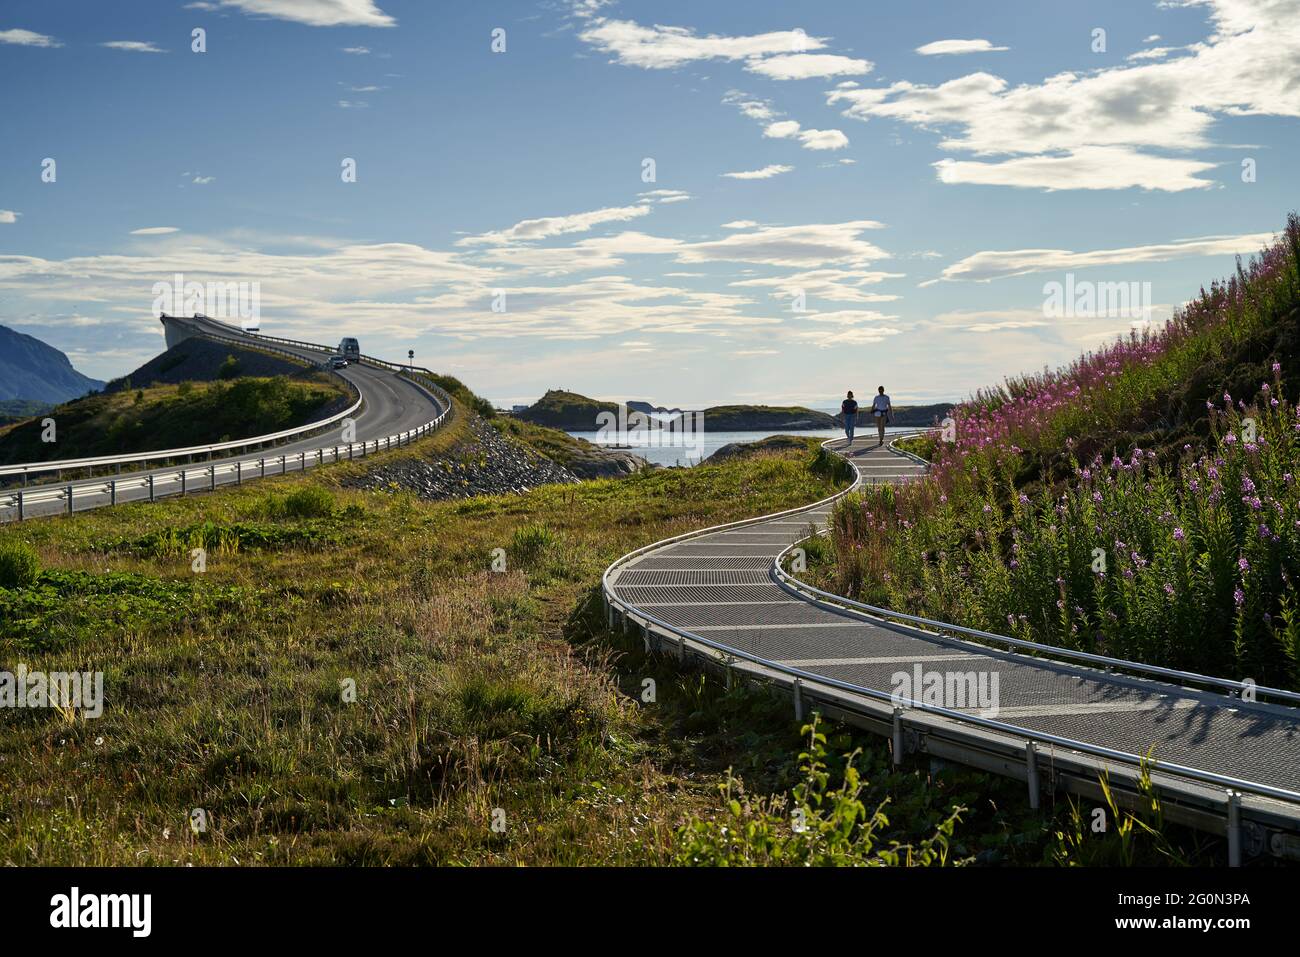 VEVANG, NORVEGIA - 28 luglio 2020: I turisti si trovano a pochi passi dal Ponte Storseisundet e dalla strada dell'Oceano Atlantico in Norvegia Foto Stock